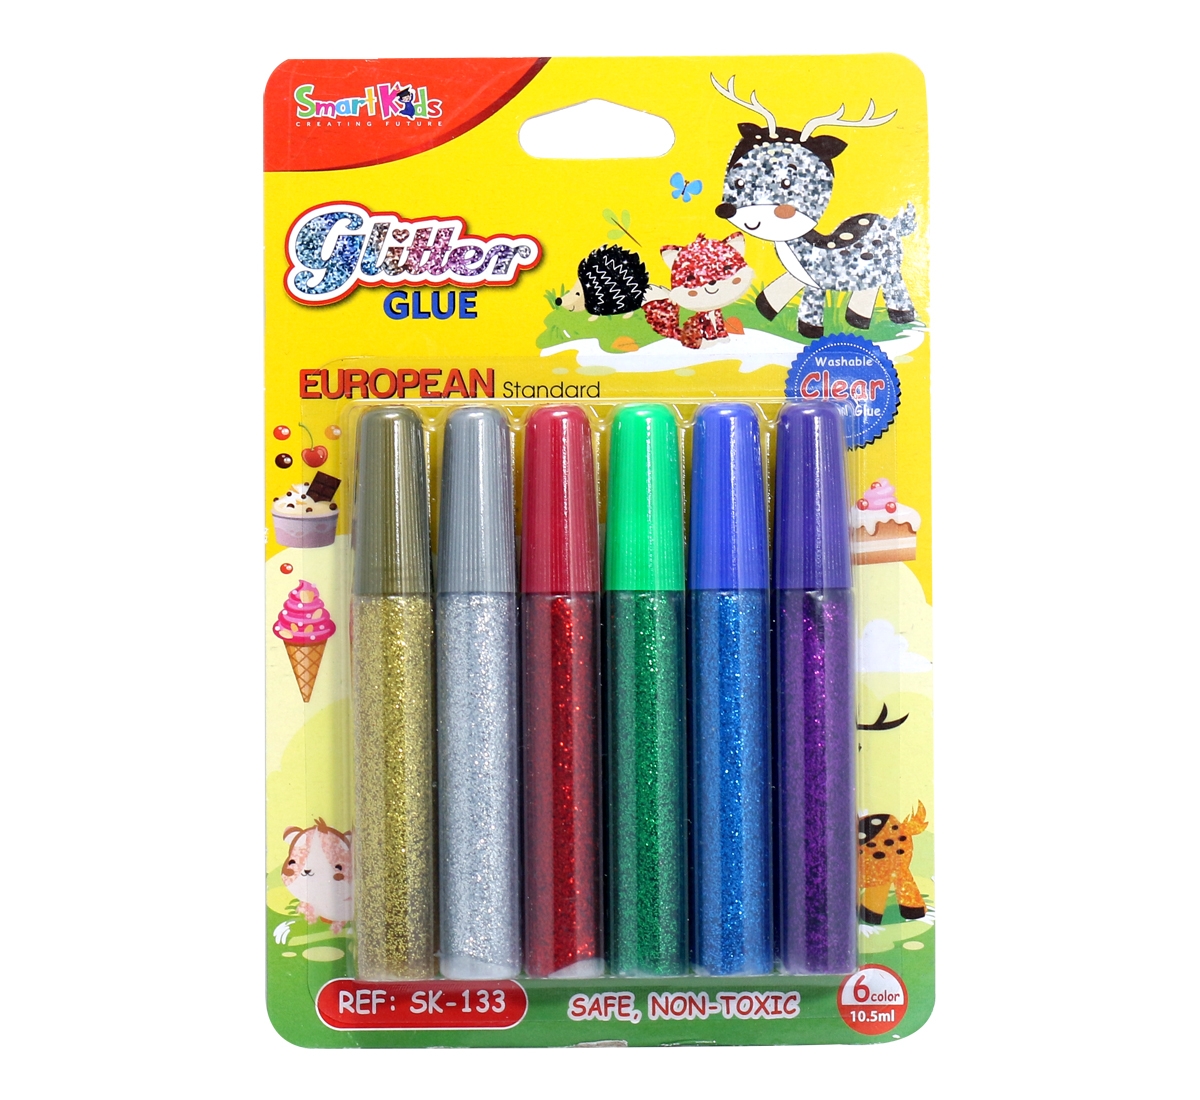 Keo kim tuyến Glitter 6 màu 10,5 ml/ màu SK-133 - Smart Kids